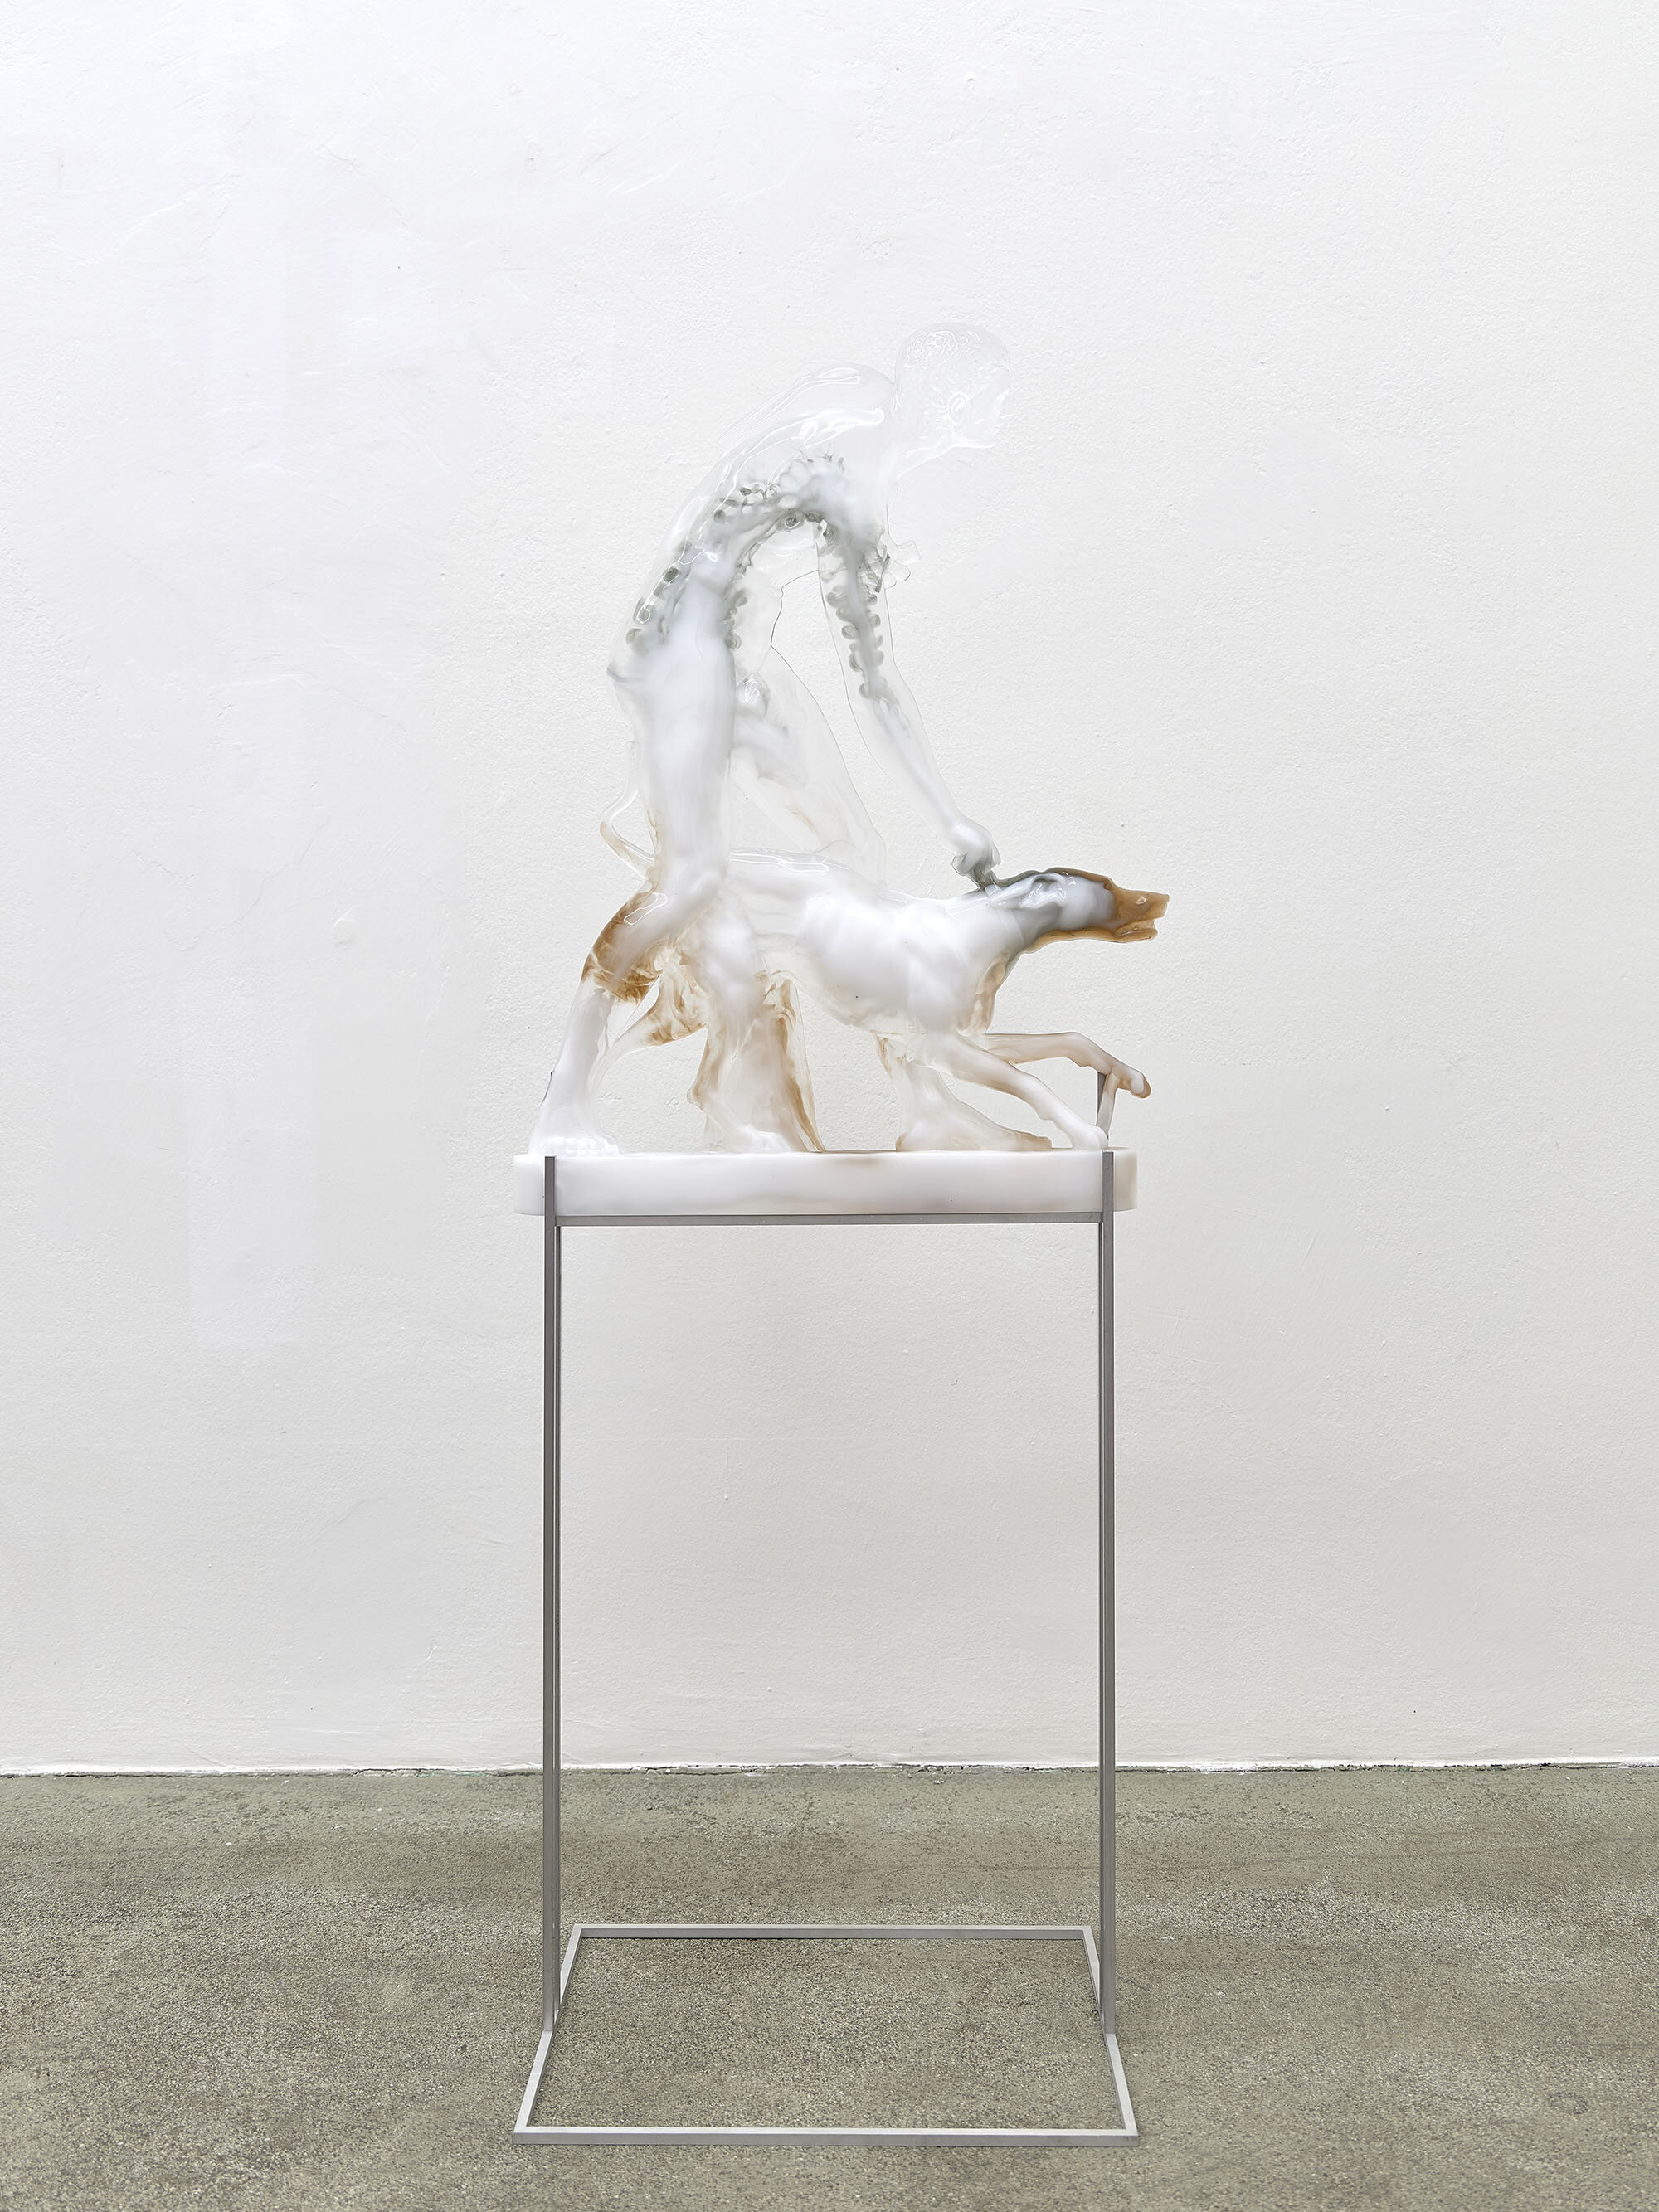 Galerie Johann Widauer-Exhibition-2020-Oliver Laric-01.jpg